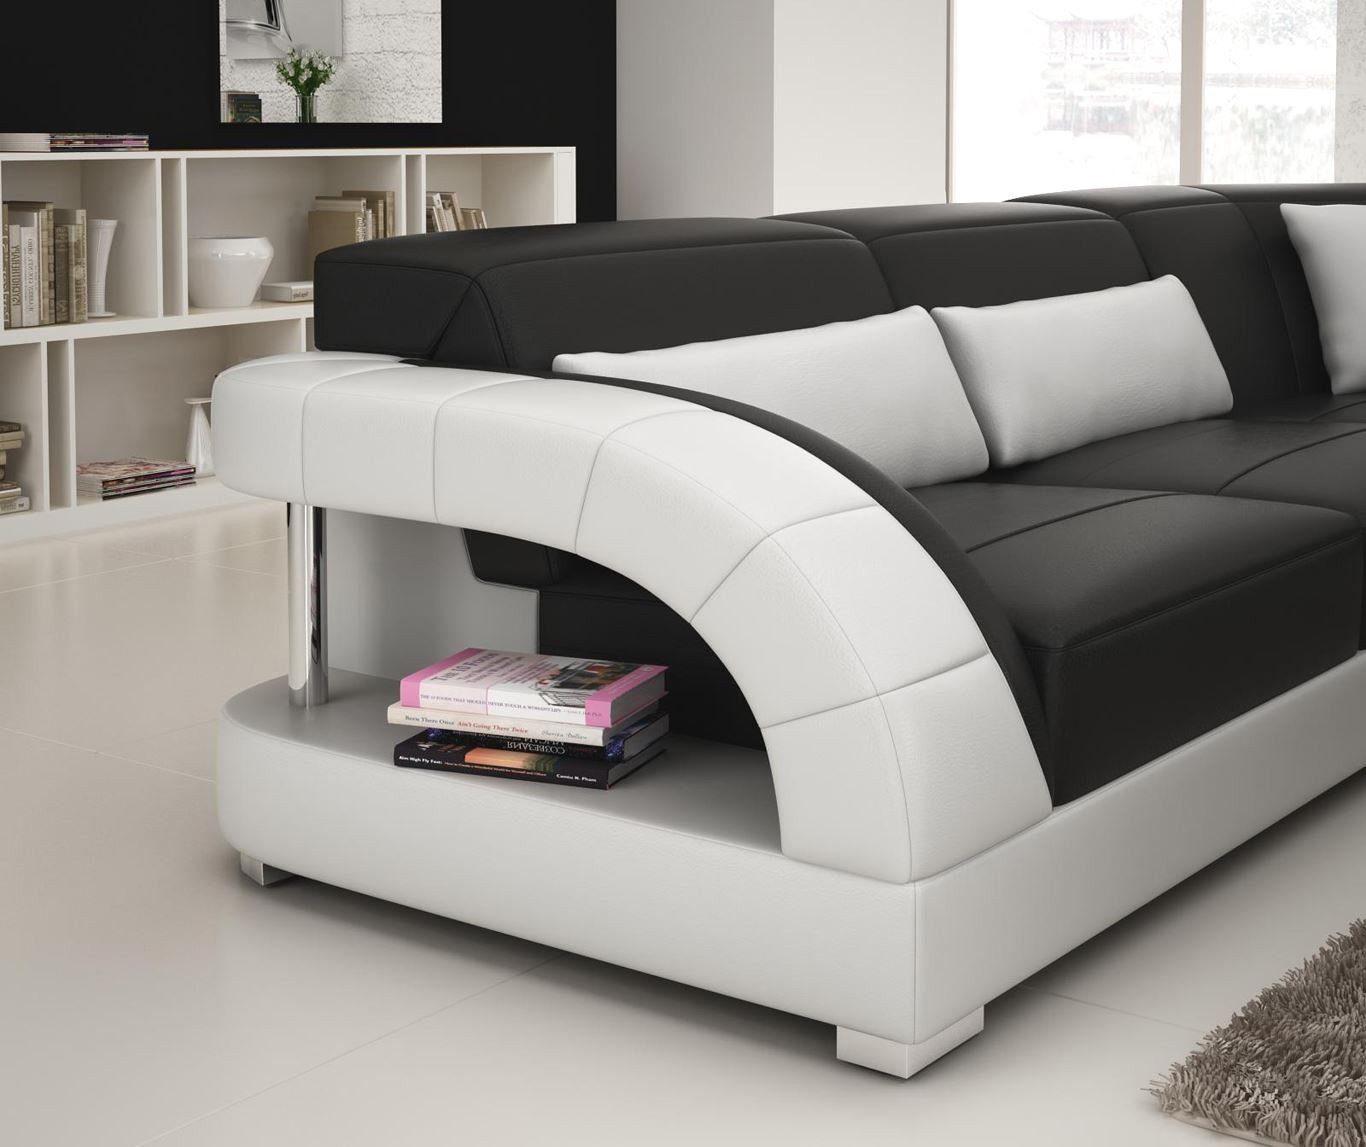 Garnitur Wohnlandschaft Ecksofa Made JVmoebel Design Couch Europe in Schwarz/Weiß Leder Ecksofa Modern,